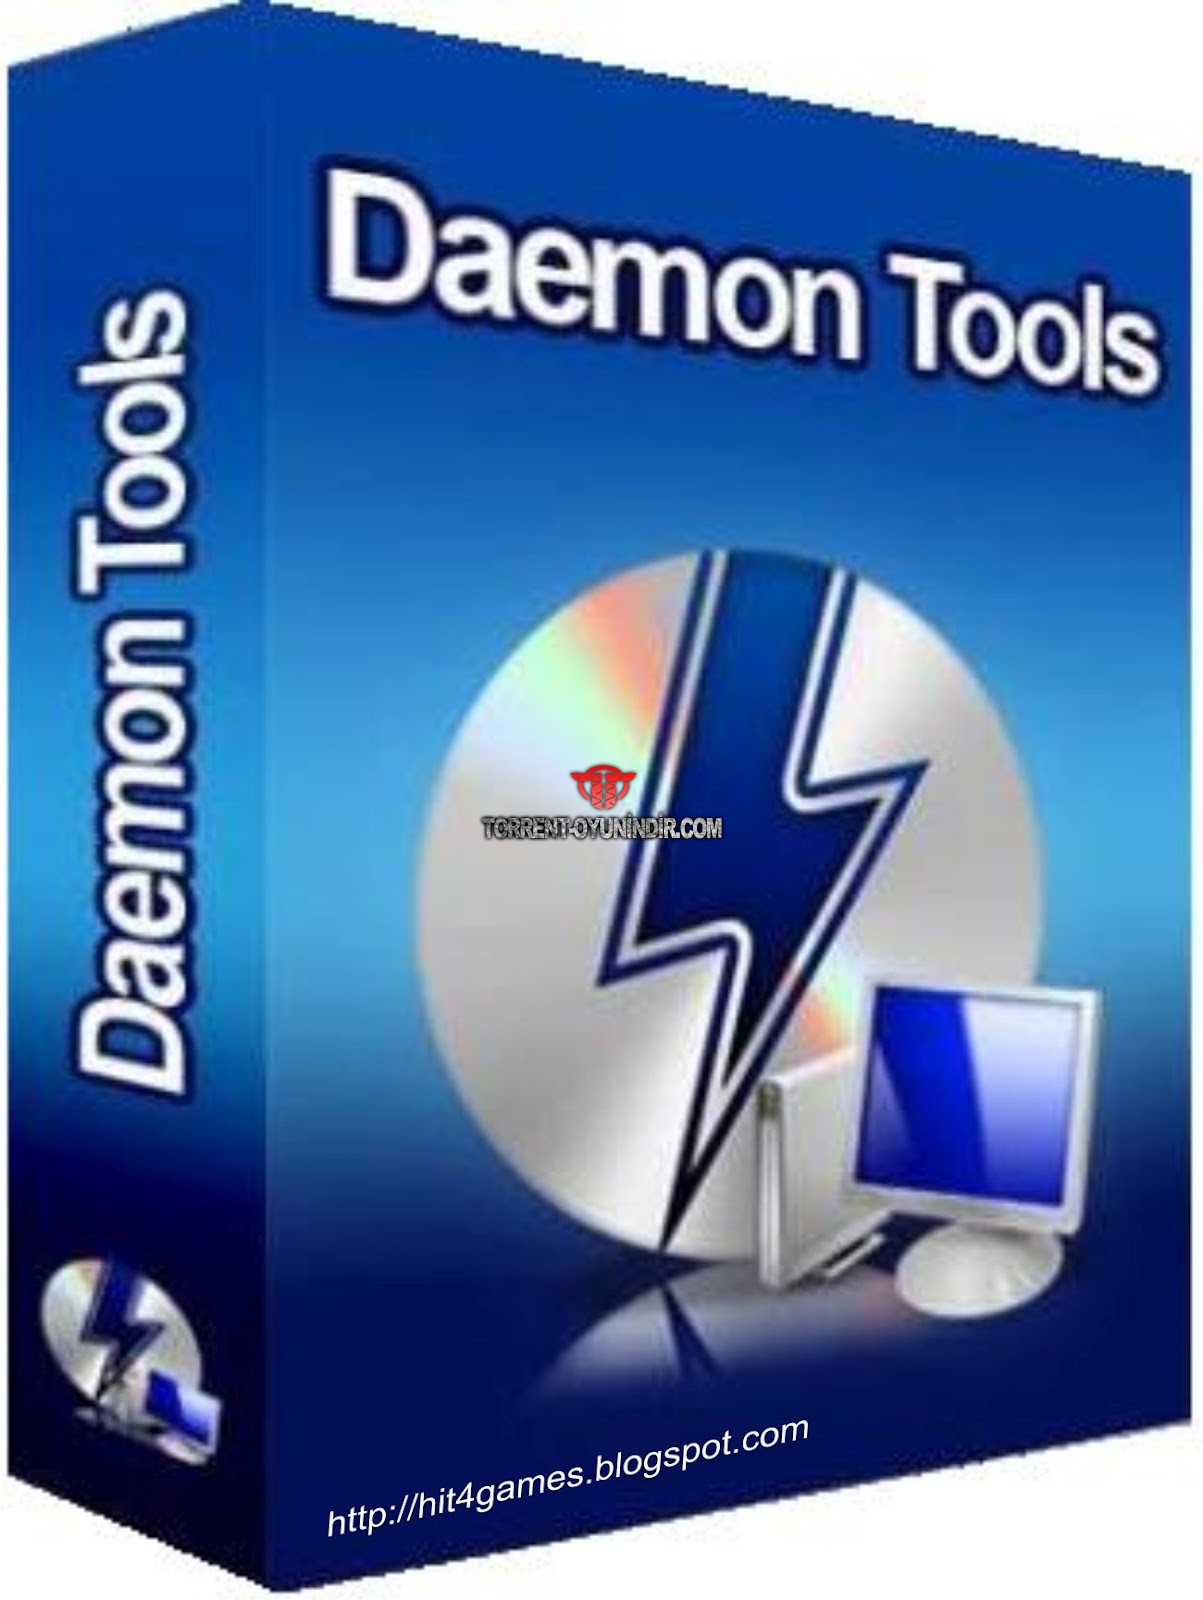 daemon tools lite download torrent tpb